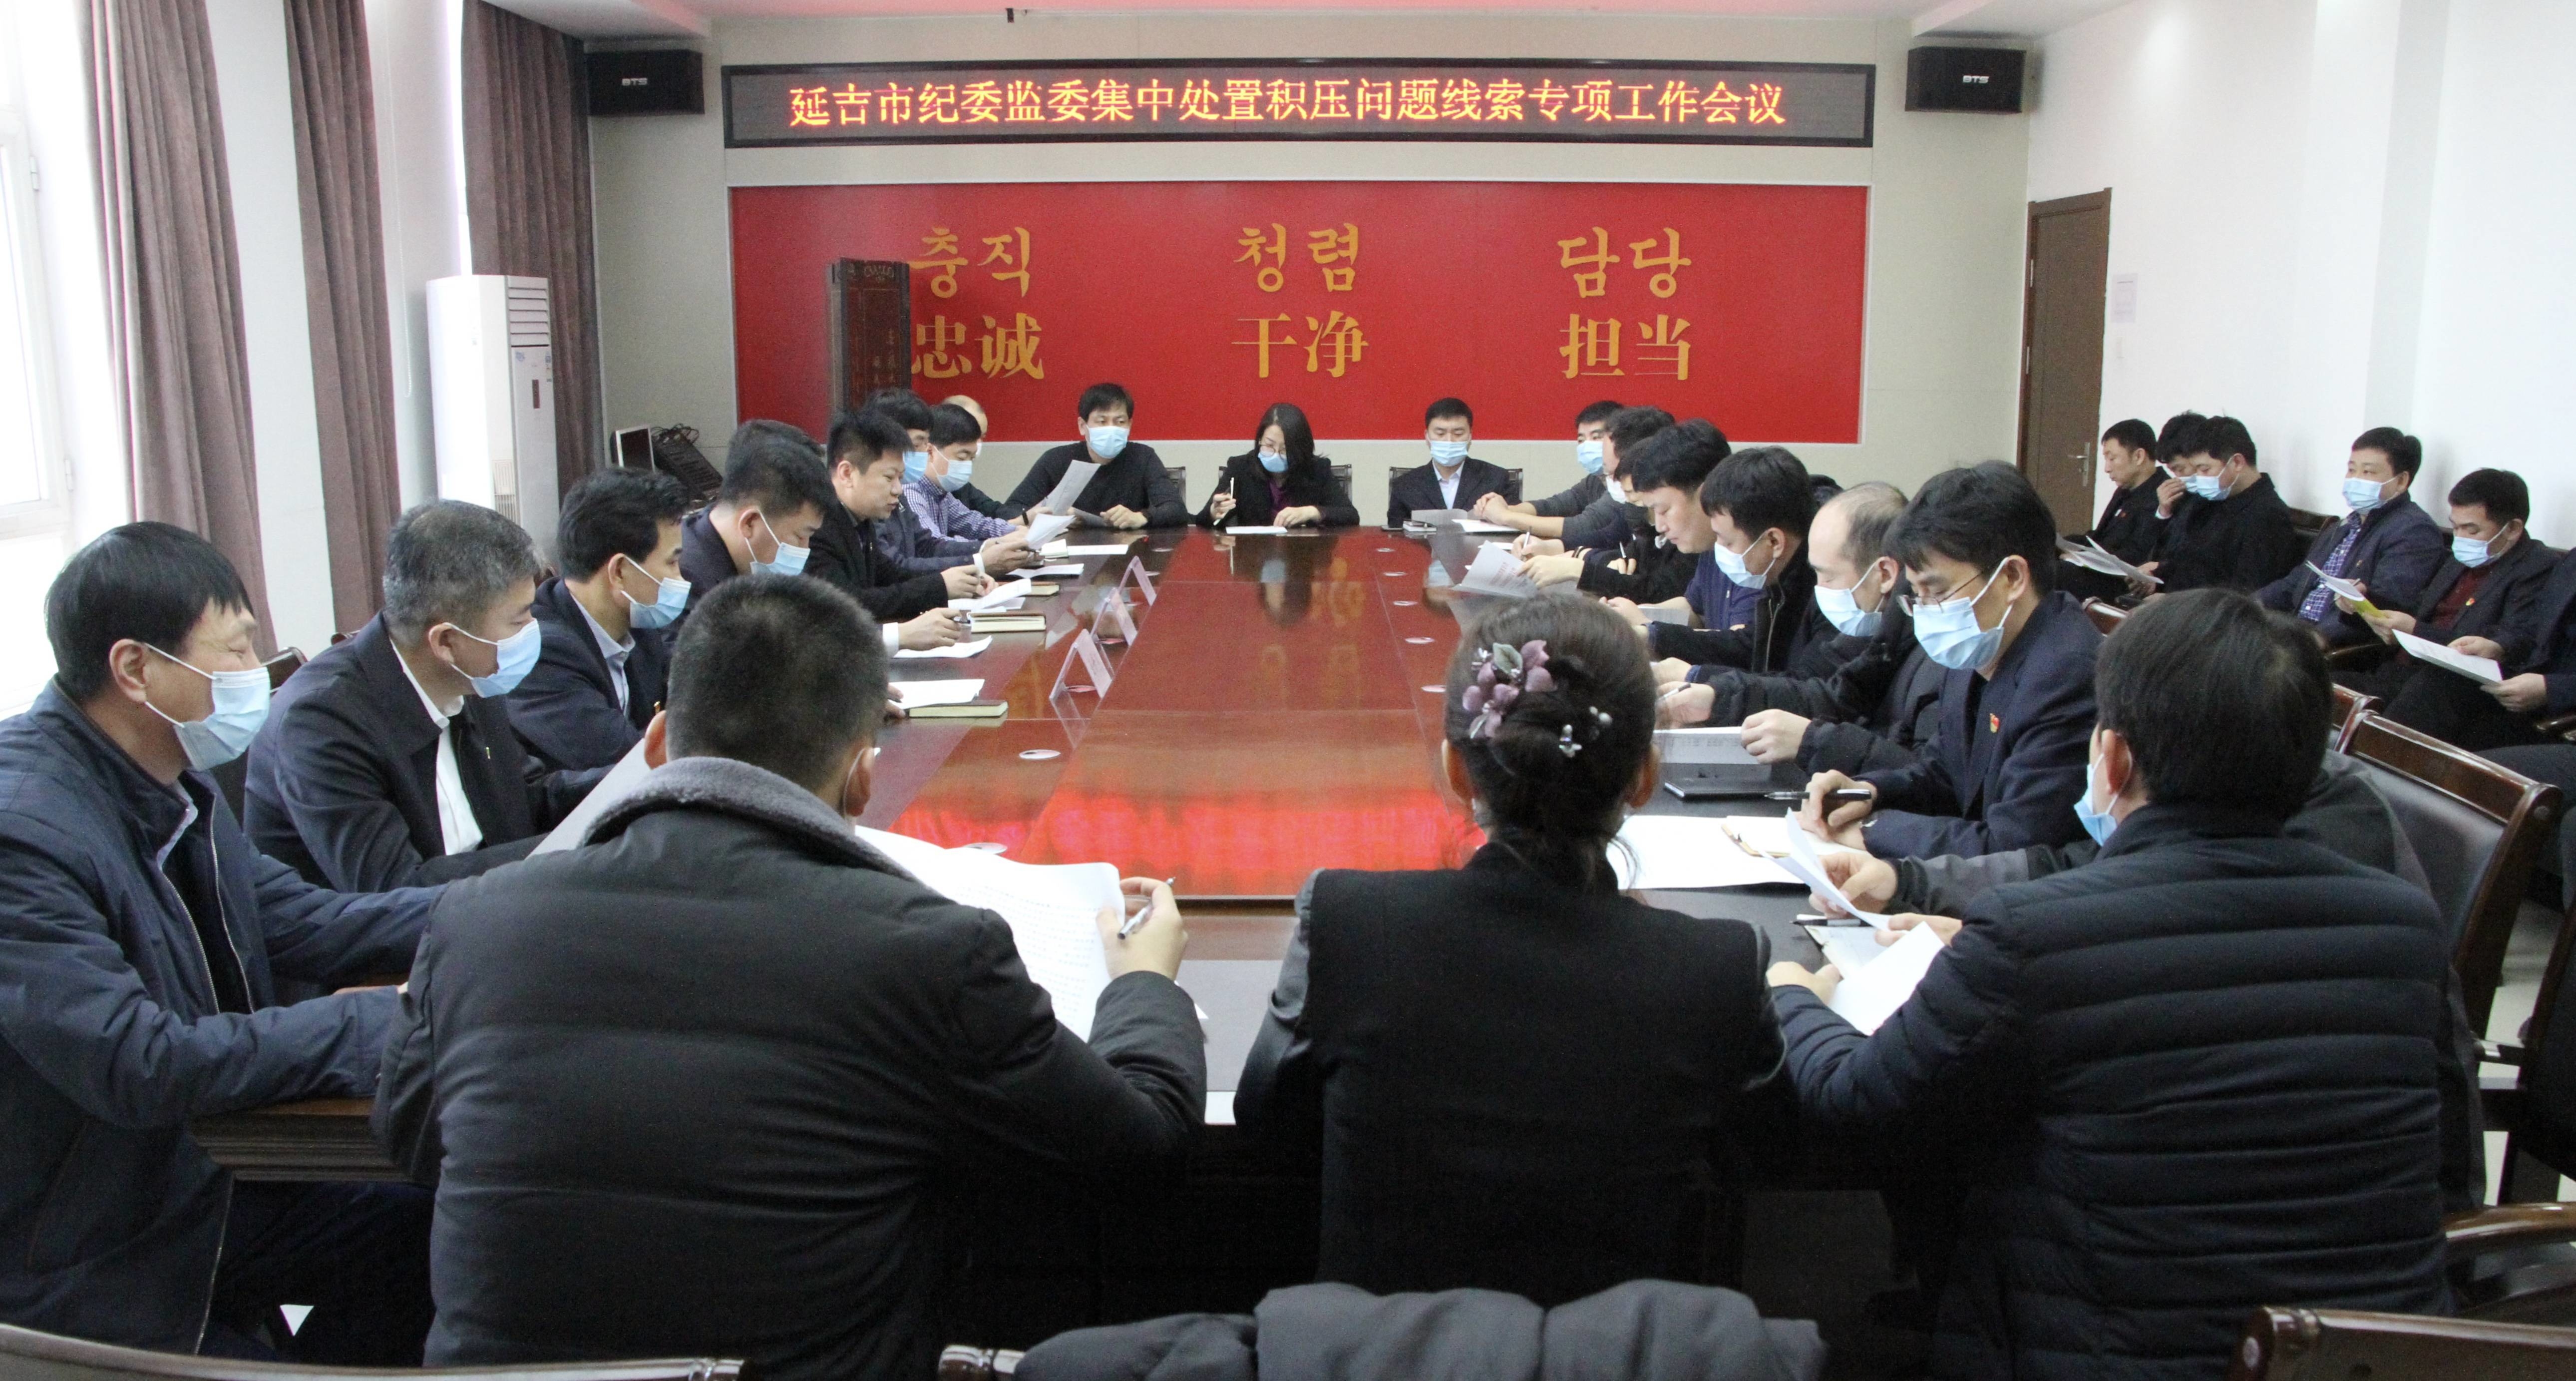 延吉市纪委监委召开集中处置问题线索专项工作会议